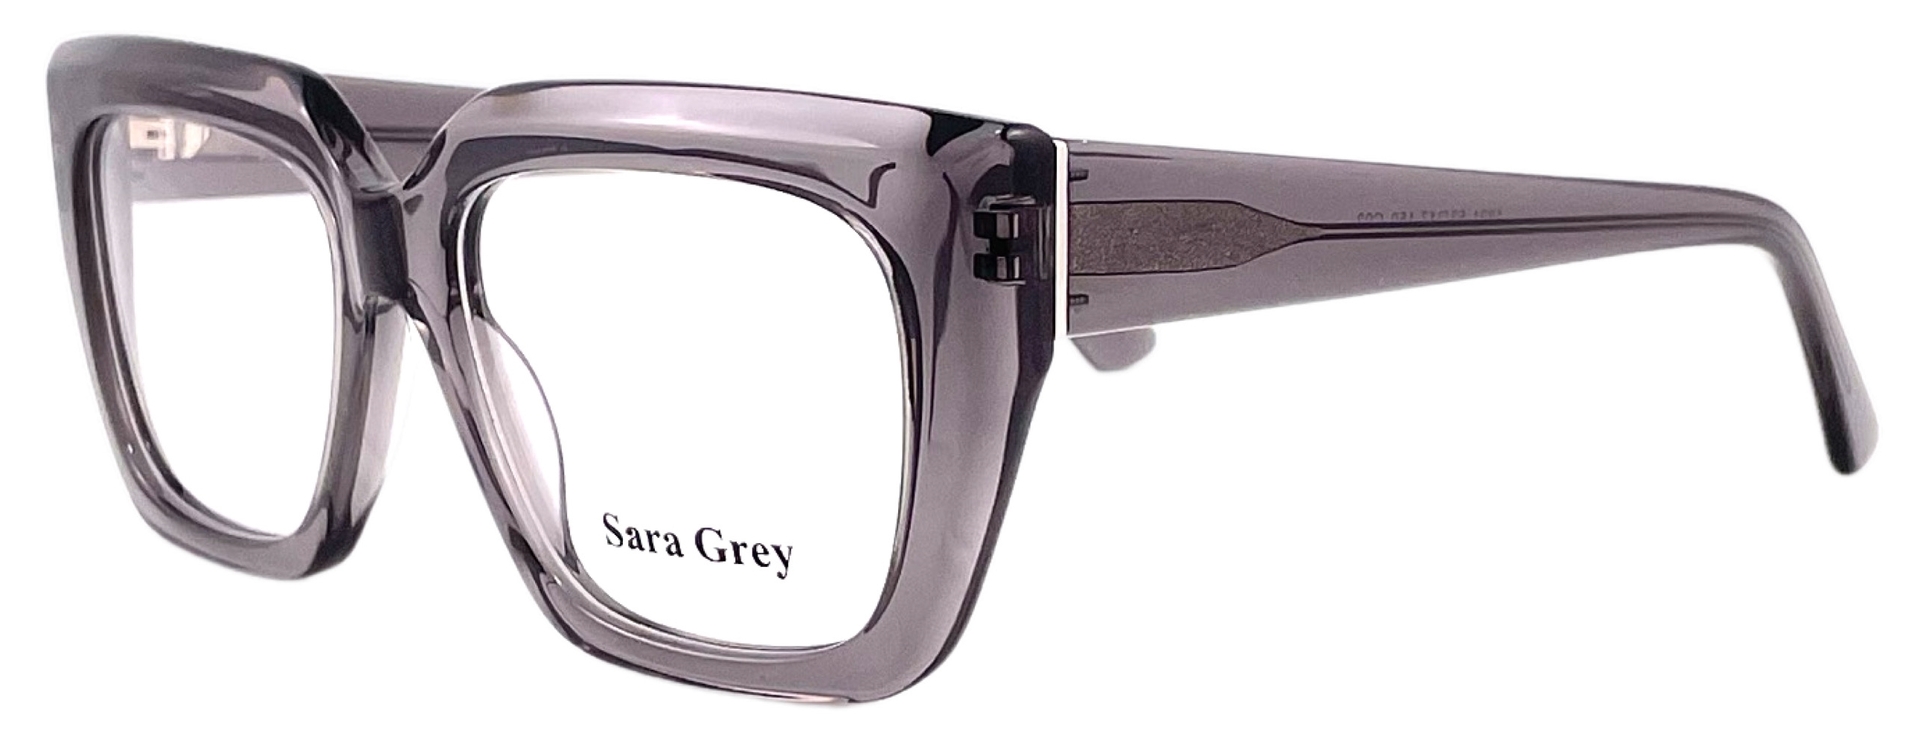 Sara Grey 1321 C02 2